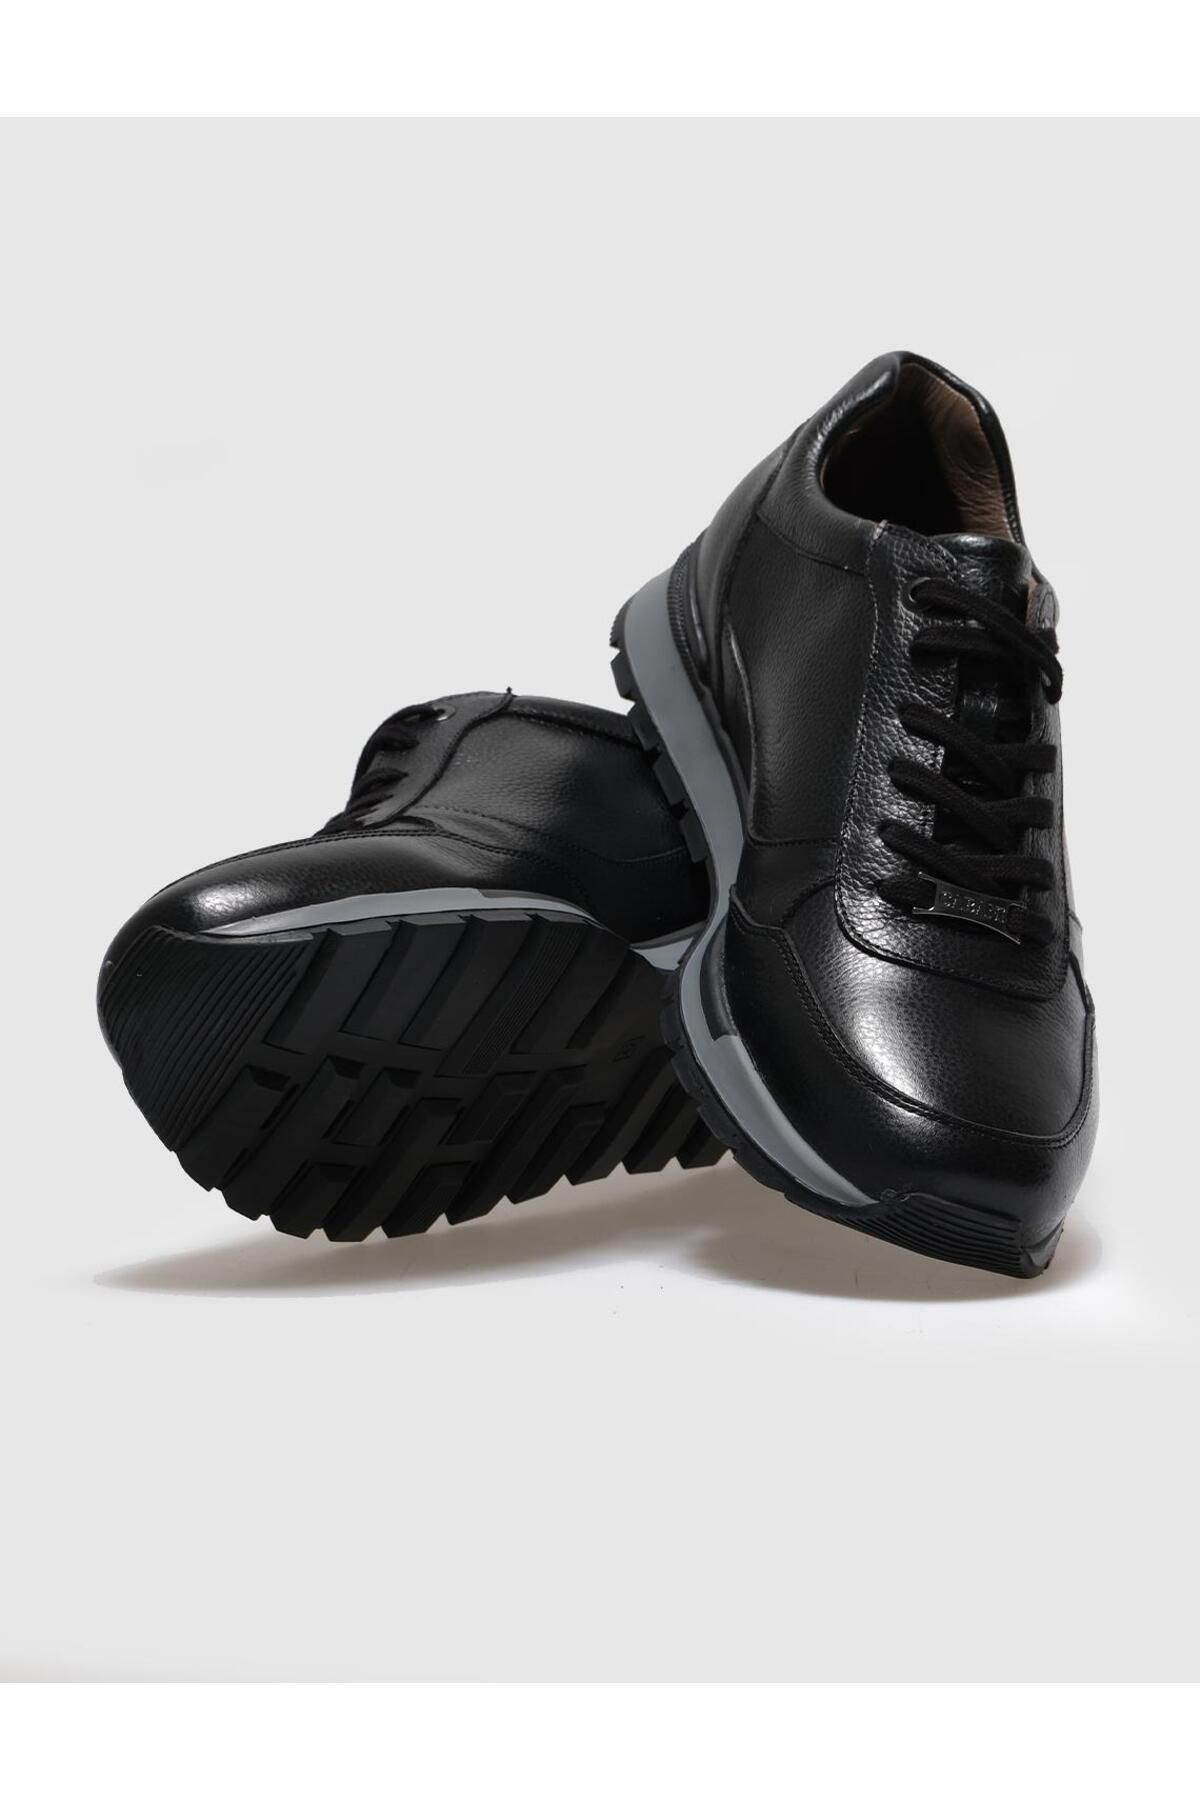 Cabani کفش ورزشی توری سیاه چرمی واقعی